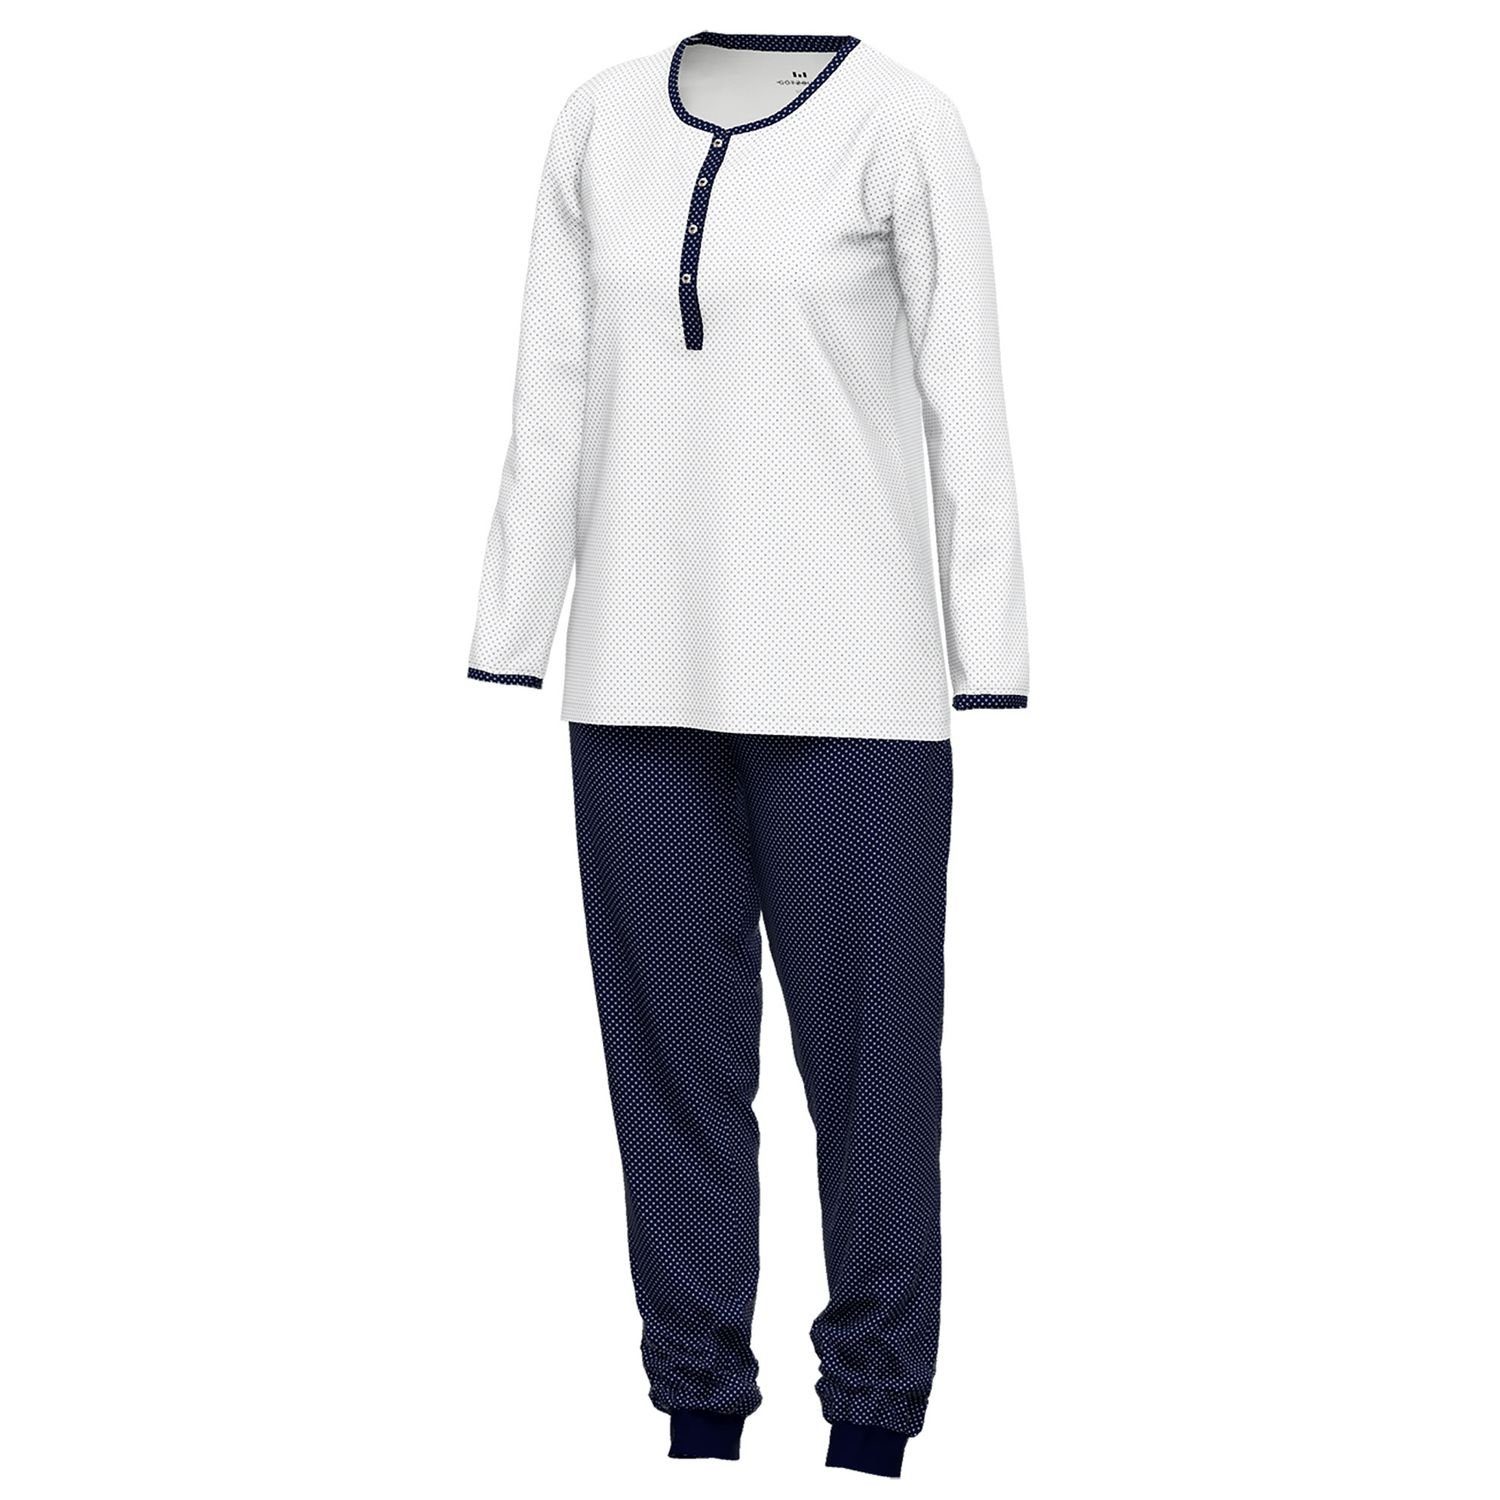 GÖTZBURG Schlafanzug mit Henley-Auschnitt, Knöpfe, weiß Baumolle gepunktet navy bequem, reine / langarm, weich